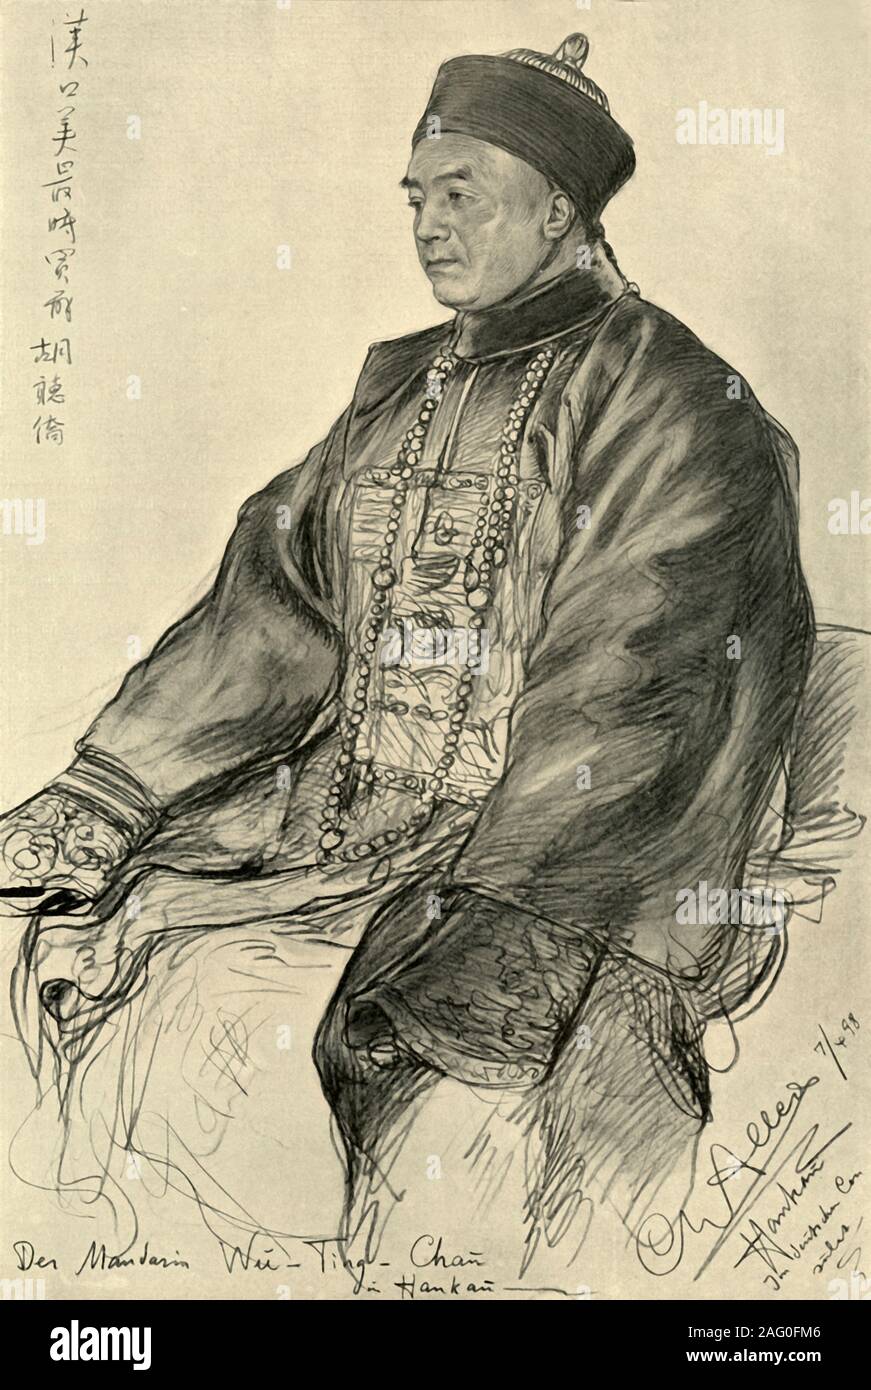 Wu-Ting-Chau, Mandarín en Hankow, 1898. Retrato de un hombre chino en batas de seda. 'Der Mandarín Wu-Ting-Chau en Hankow'. Desde "Rund um die Erde" la vuelta de e